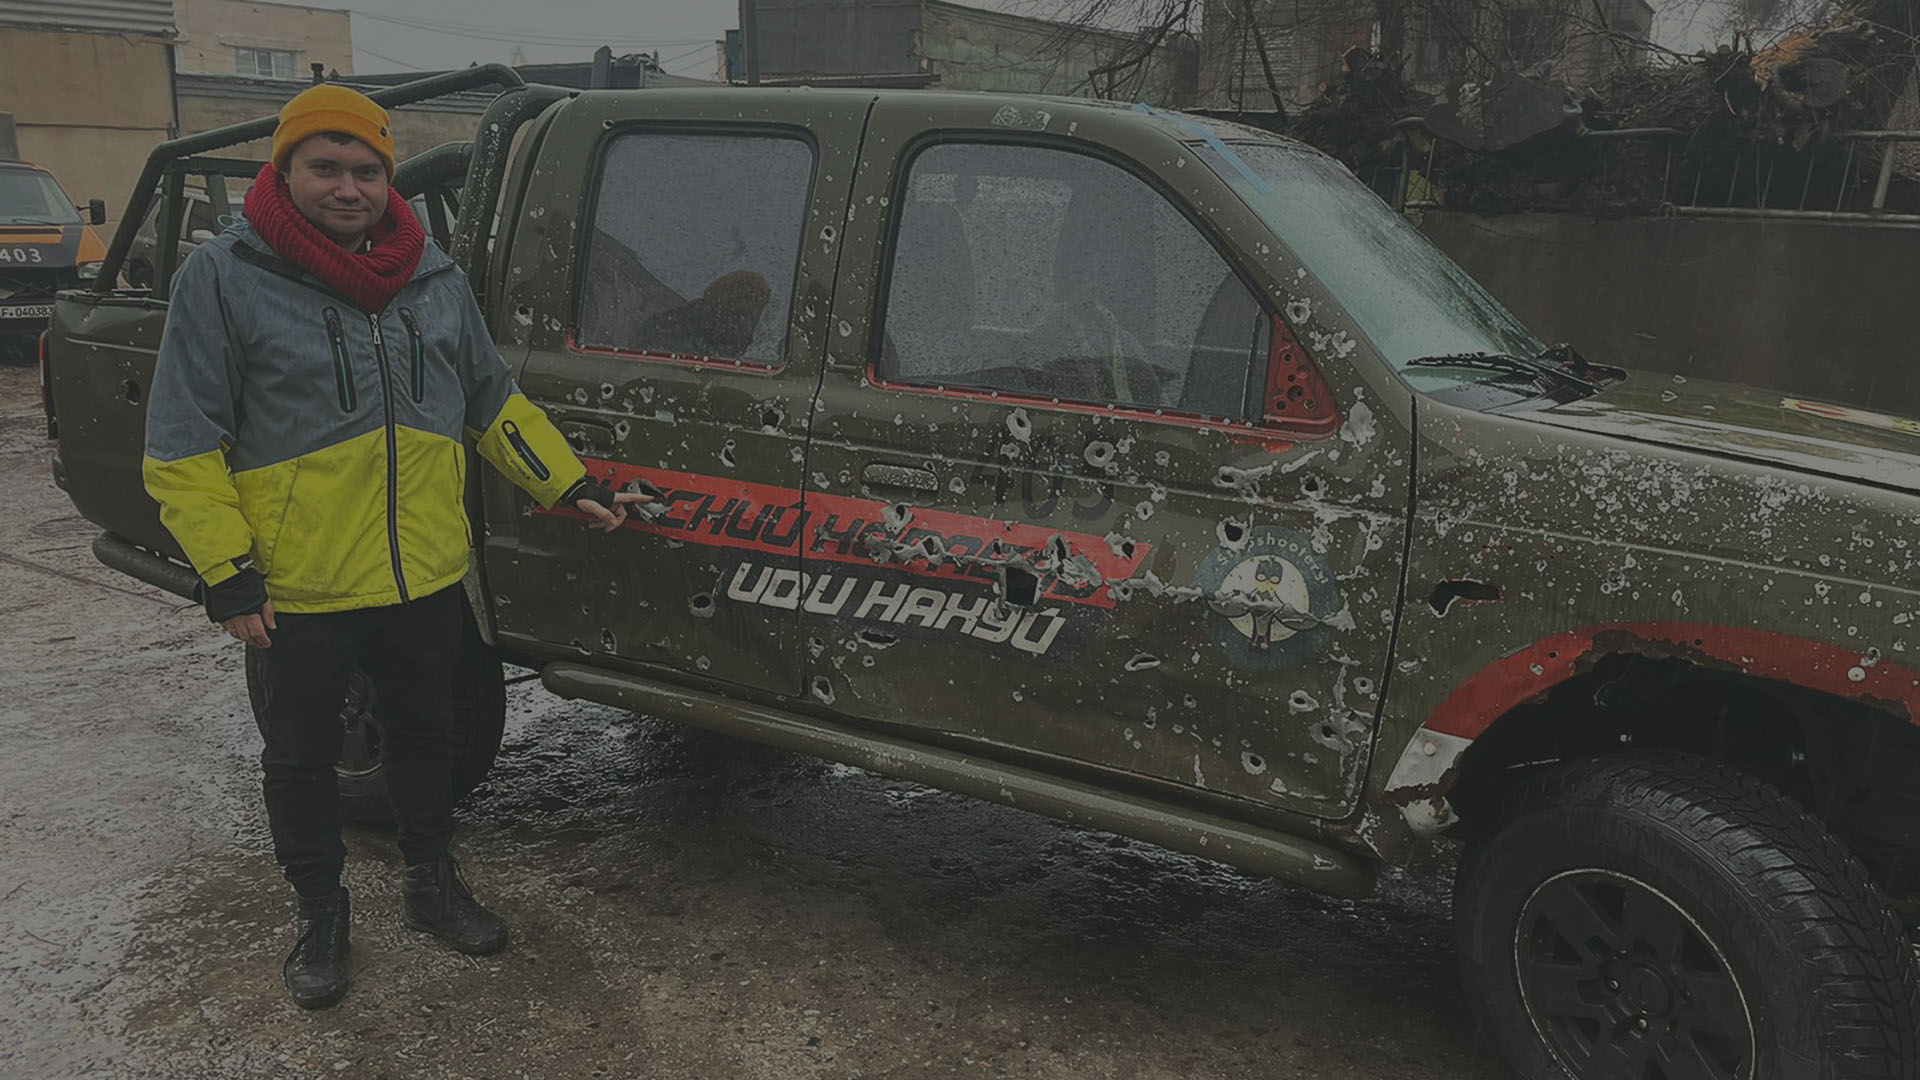 Une photo d'une voiture bombardée, qui a été donnée à Car for Ukraine et utilisée sur les lignes de front ukrainiennes.